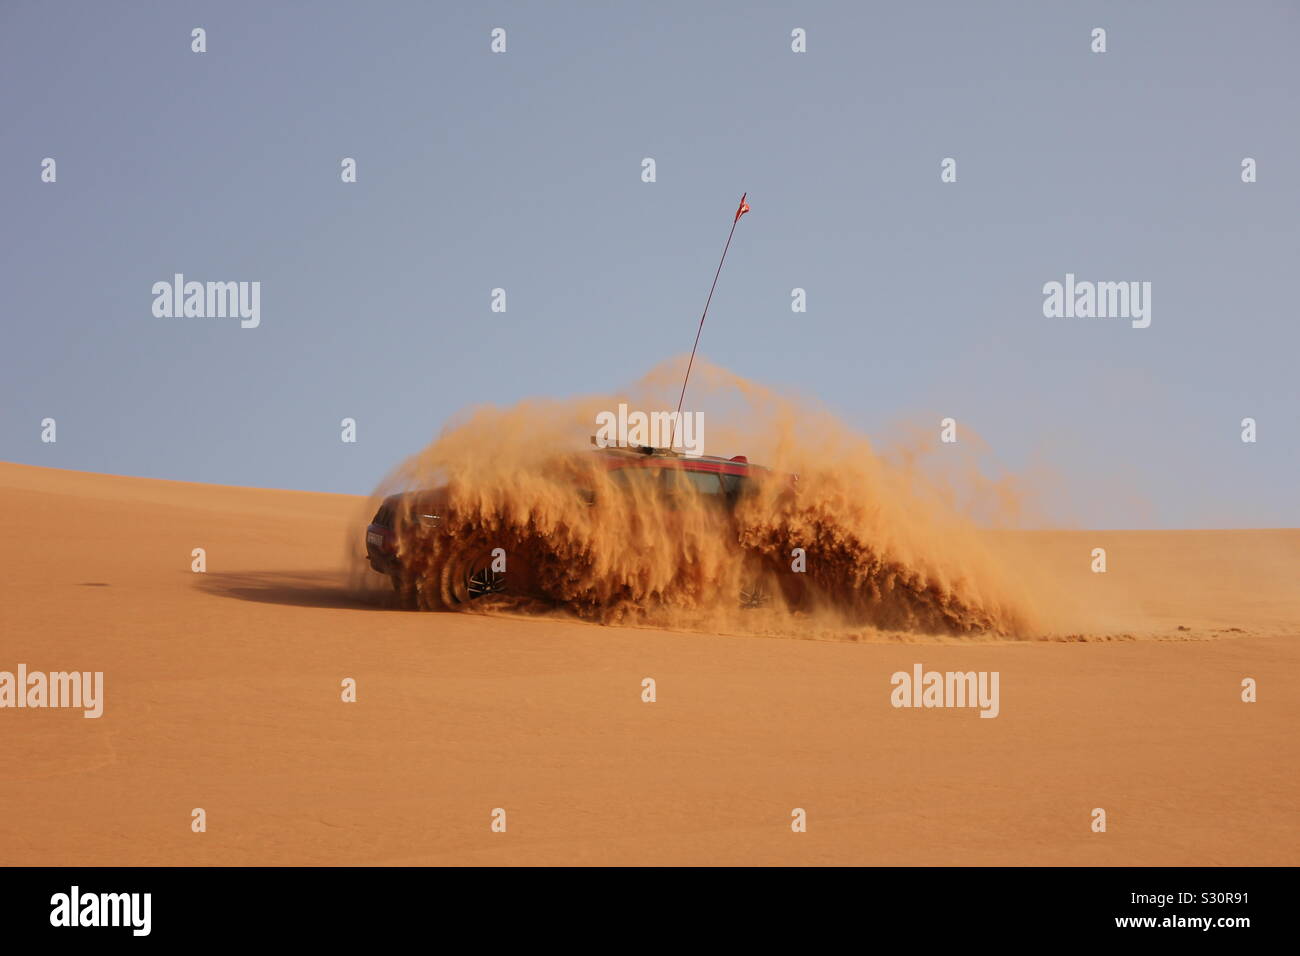 Ein Jeep Grand Cherokee Butterfässer, eine Dusche, während durch die Wüste Sand Dünen in Dubai, Vereinigte Arabische Emirate angetrieben wird. Stockfoto